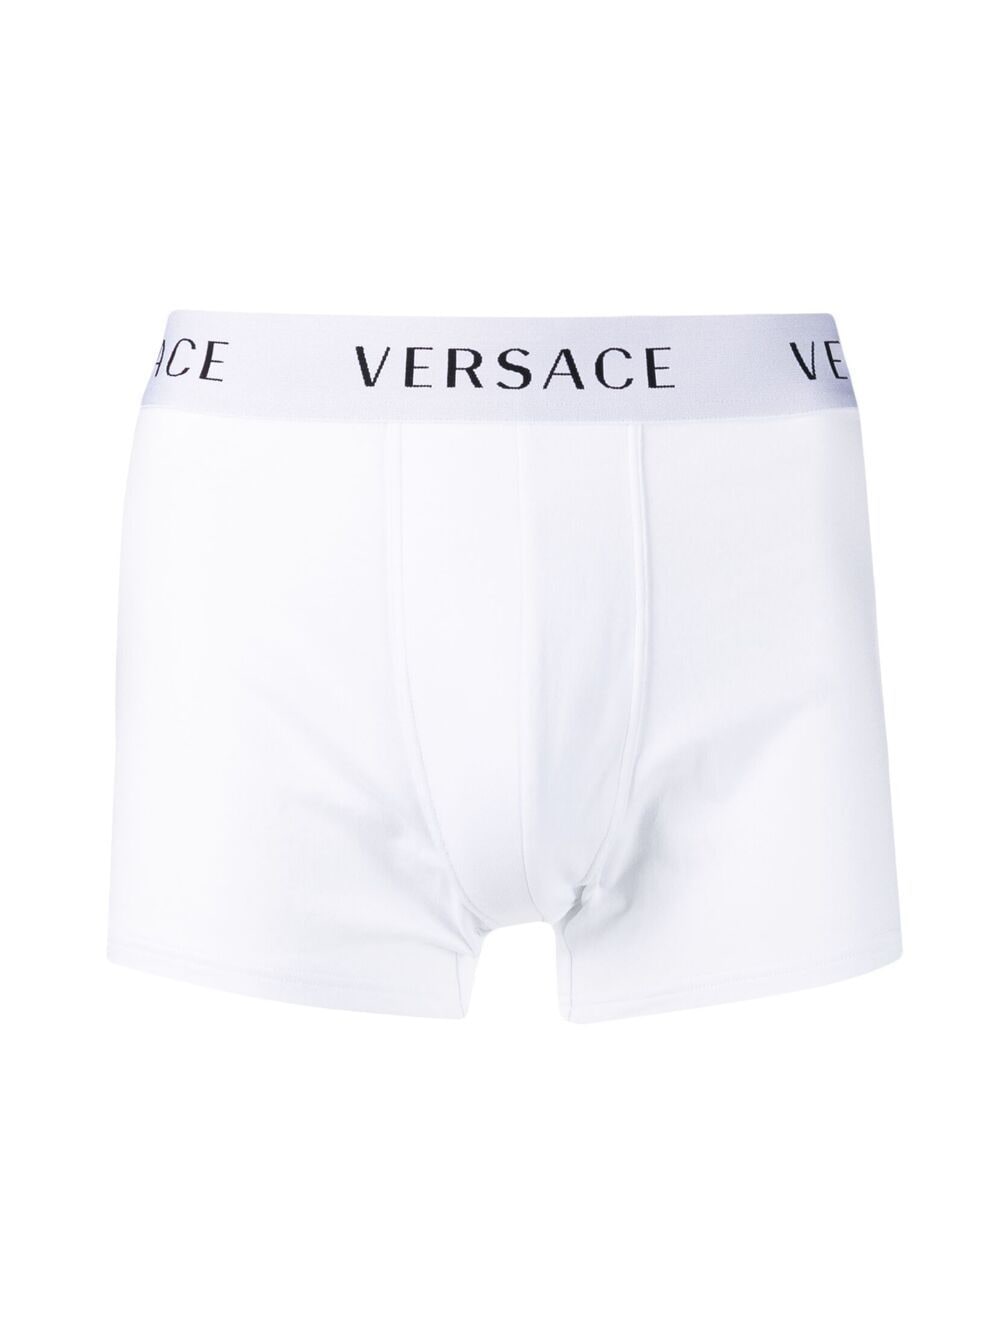 Versace Twee boxershorts met logo tailleband - Wit